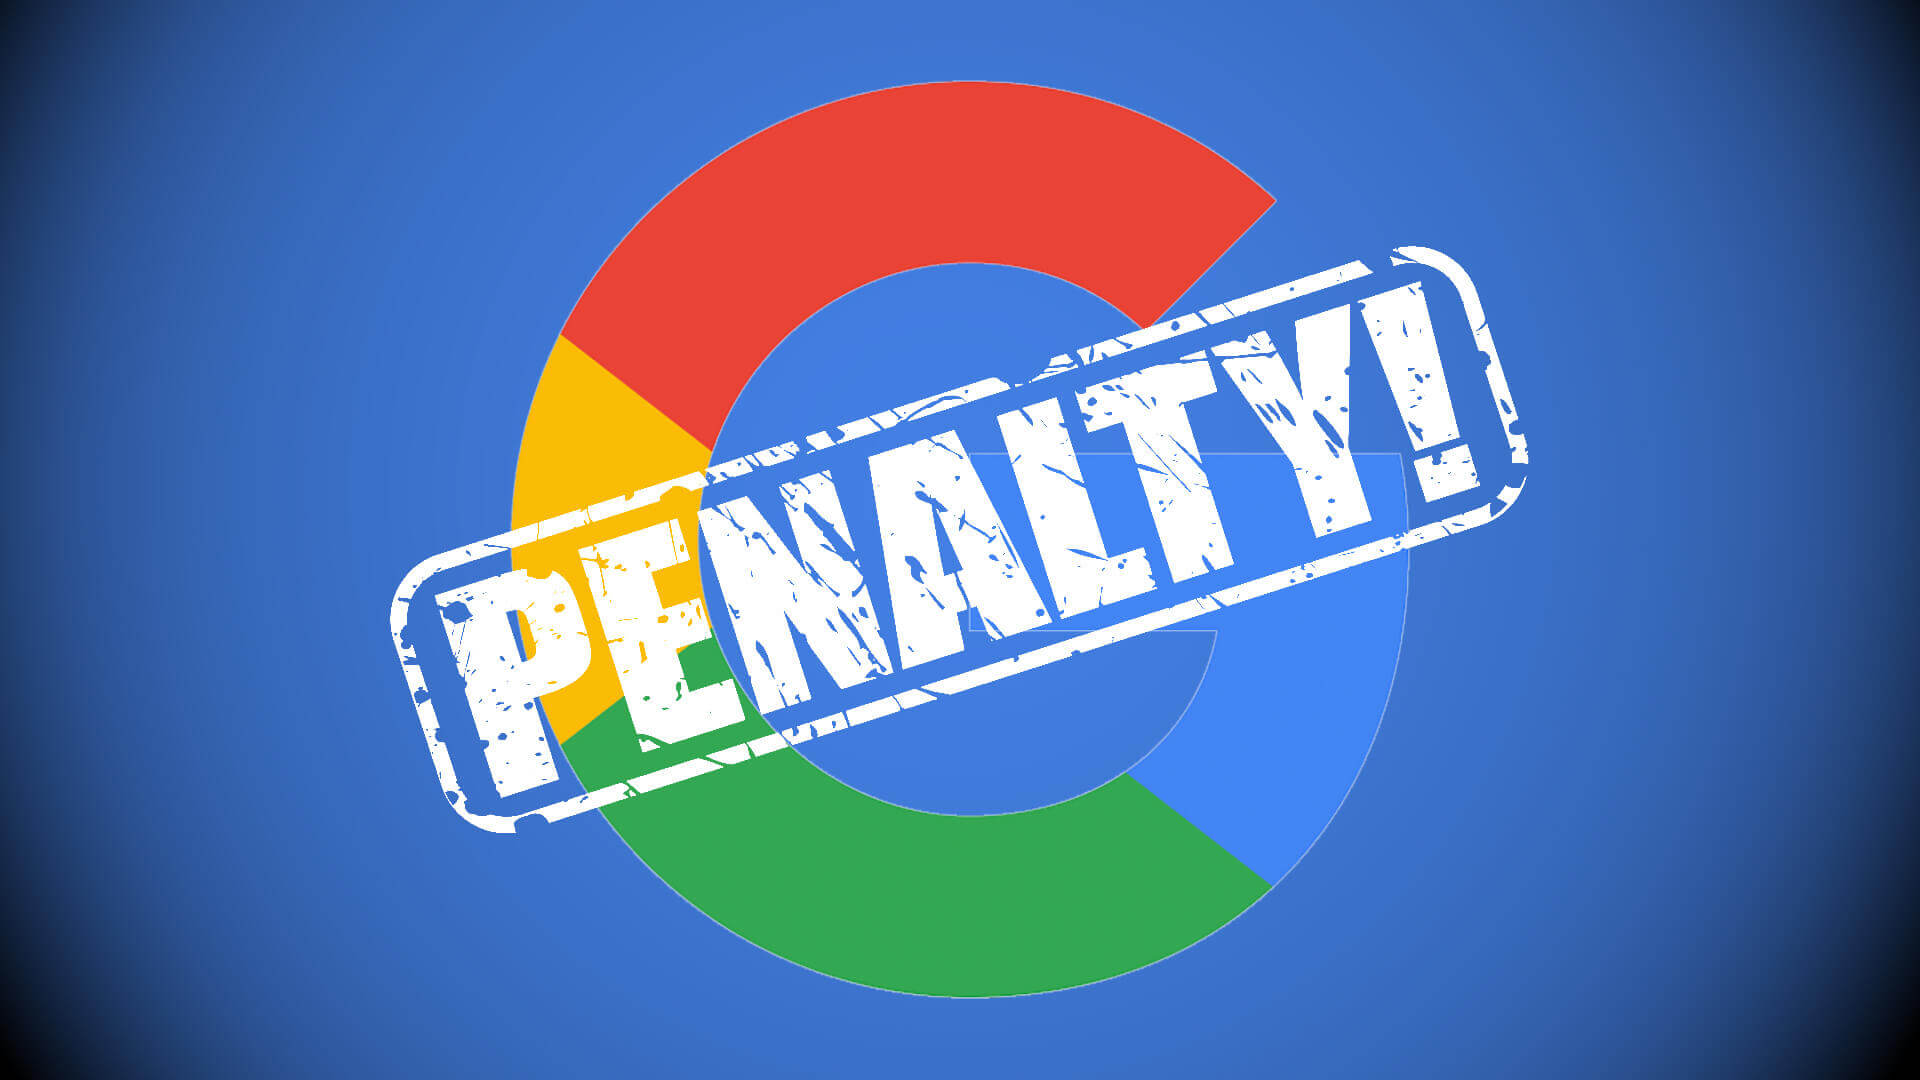 Google büntetés